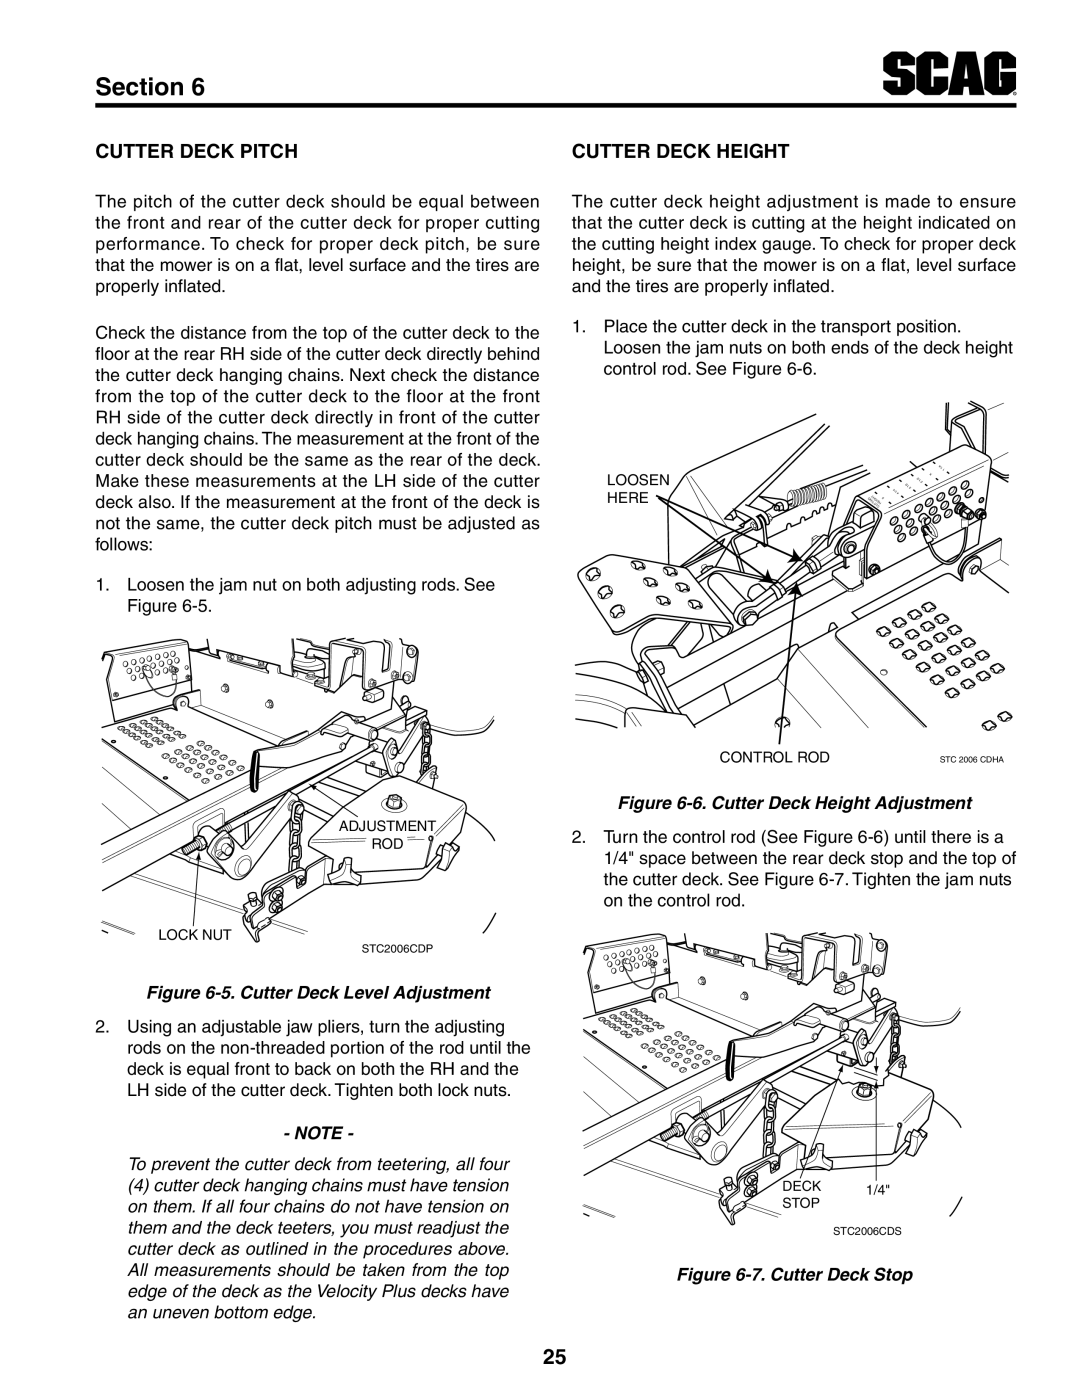 Scag Power Equipment STWC61V-25KA-LC manual Section, Cutter Deck Pitch, Cutter Deck Height, 5. Cutter Deck Level Adjustment 